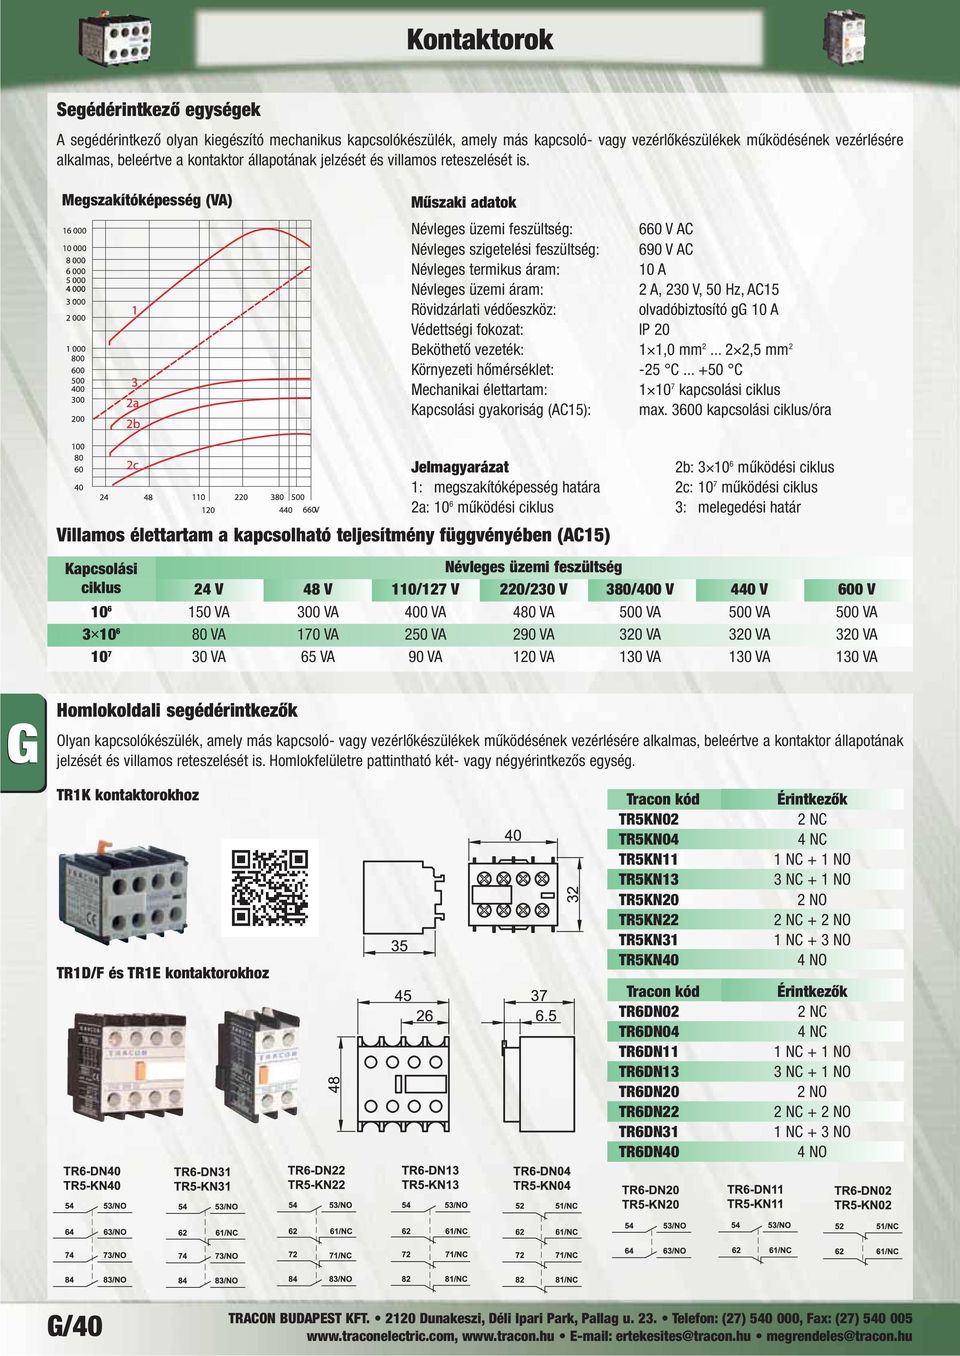 Megszakítóképesség (VA) Műszaki adatok Névleges üzemi feszültség: 660 V AC Névleges szigetelési feszültség: 690 V AC Névleges termikus áram: 10 A Névleges üzemi áram: 2 A, 230 V, 50 Hz, AC15